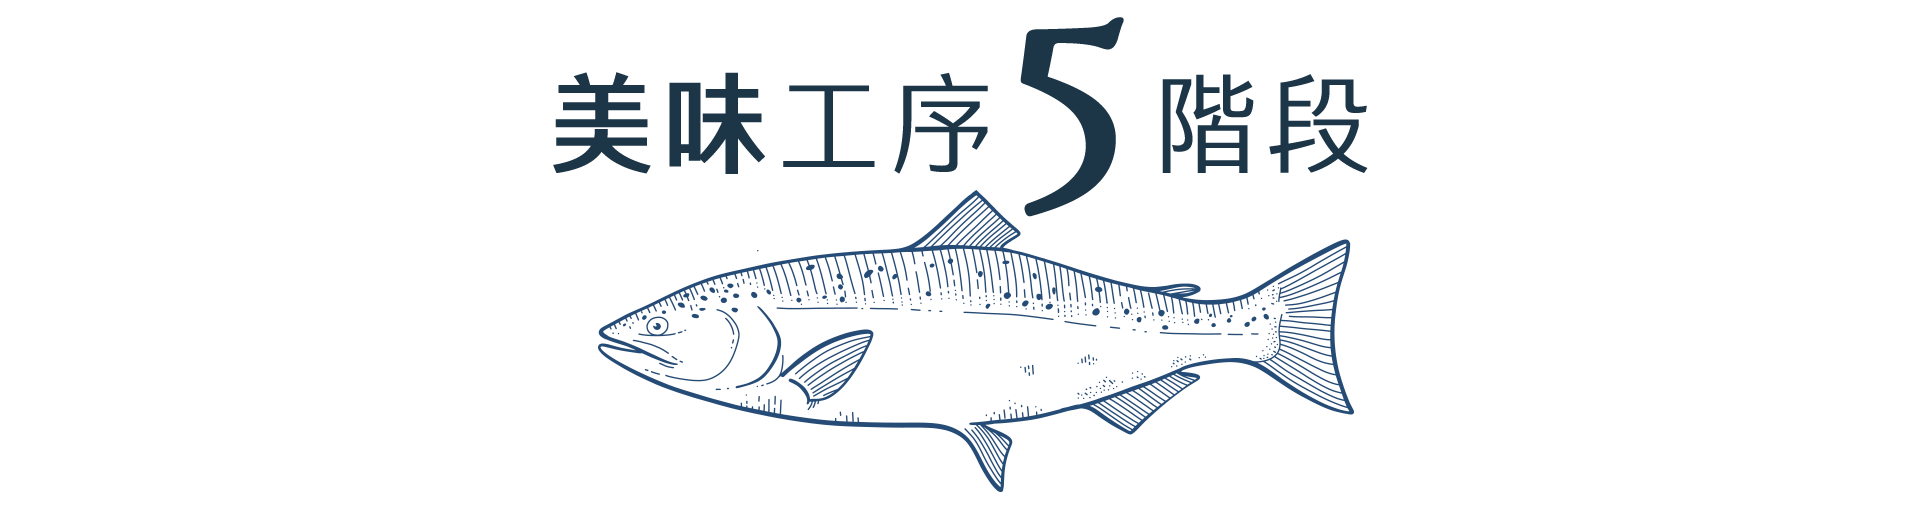 鮭魚進化五階段